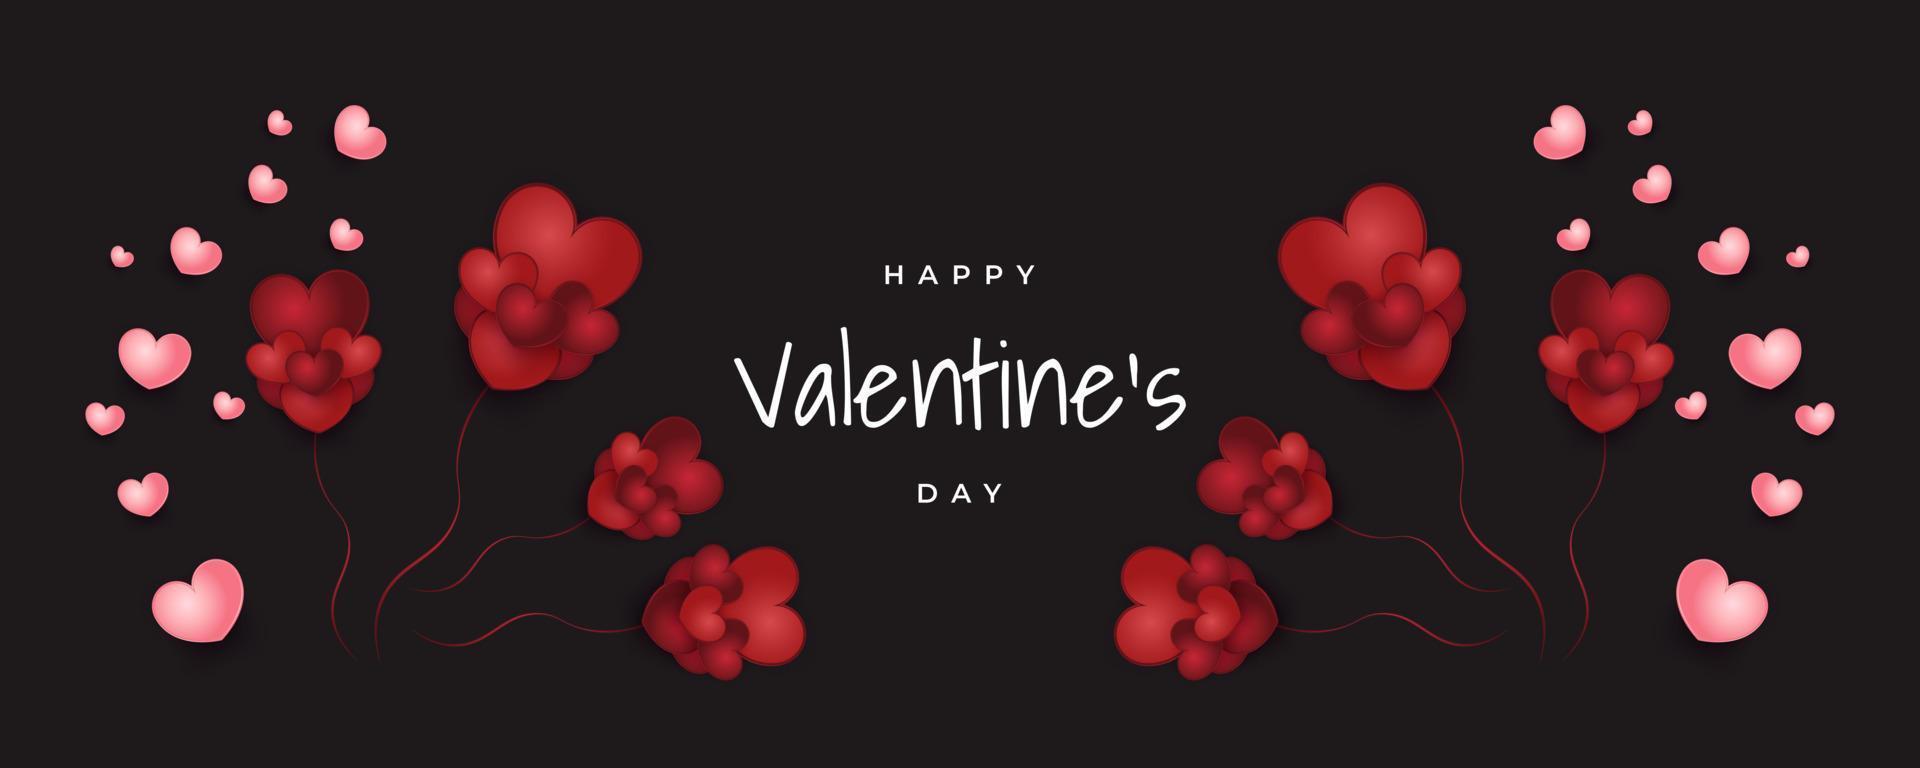 horizontales valentinstagbanner mit roten und rosa herzen isoliert auf schwarzem hintergrund. Happy Valentines Day Typografie vektor